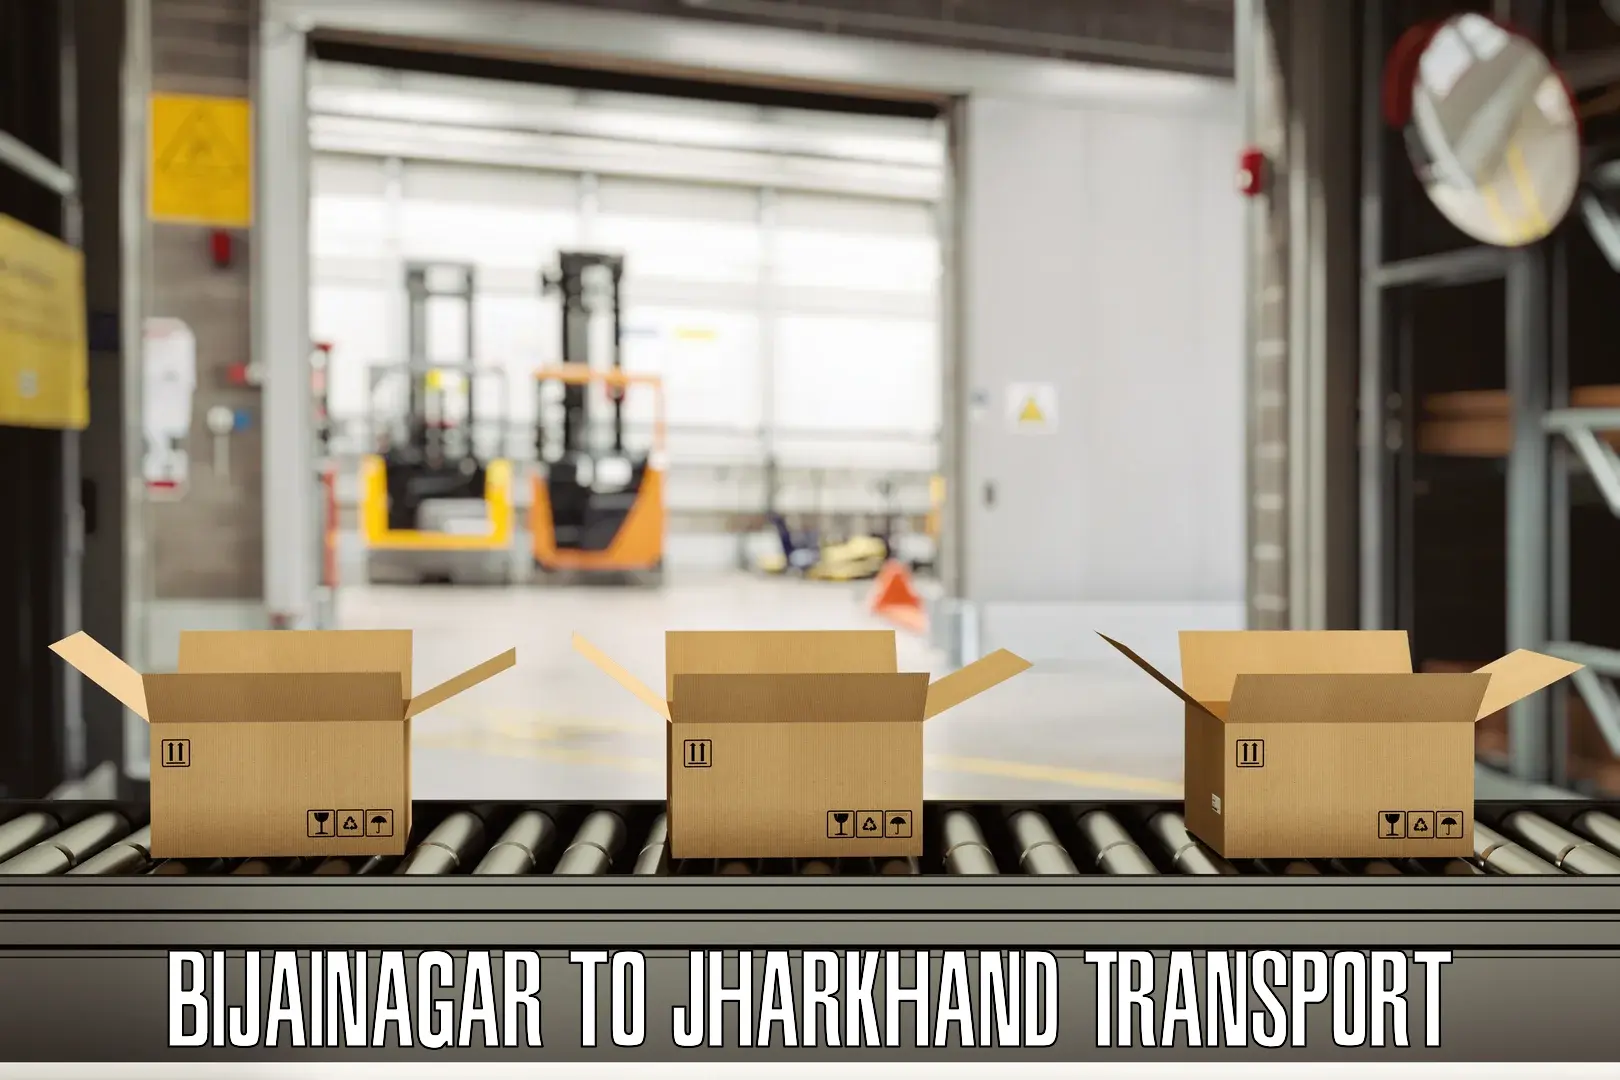 Container transport service Bijainagar to Peterbar